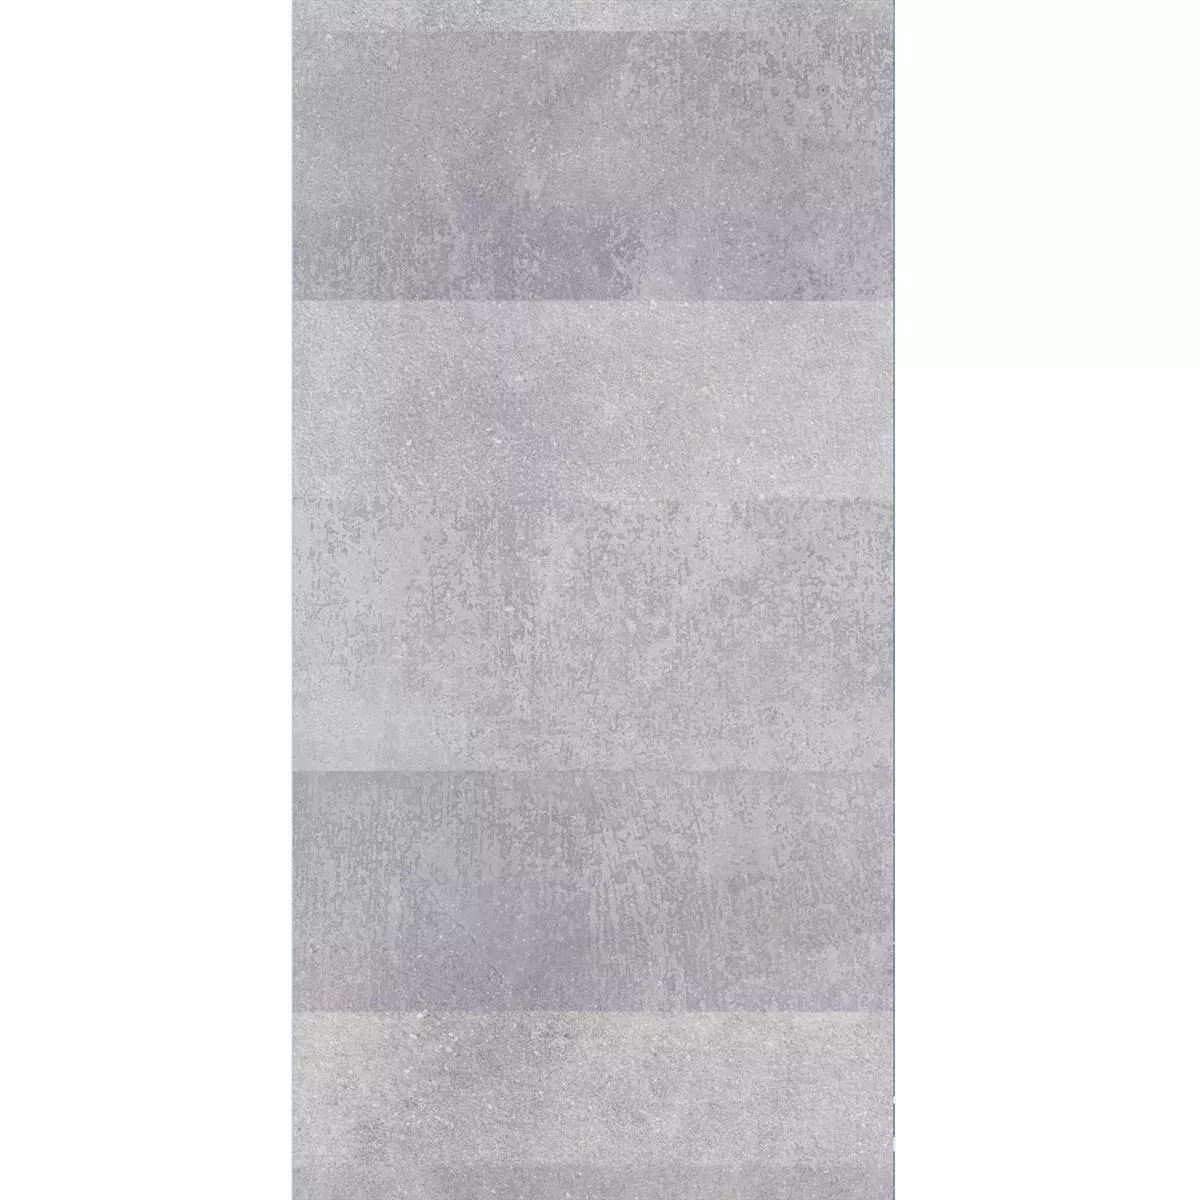 Vzorek Podlahové Dlaždice Torino Cementový Vzhled Lappato Šedá 60x120cm